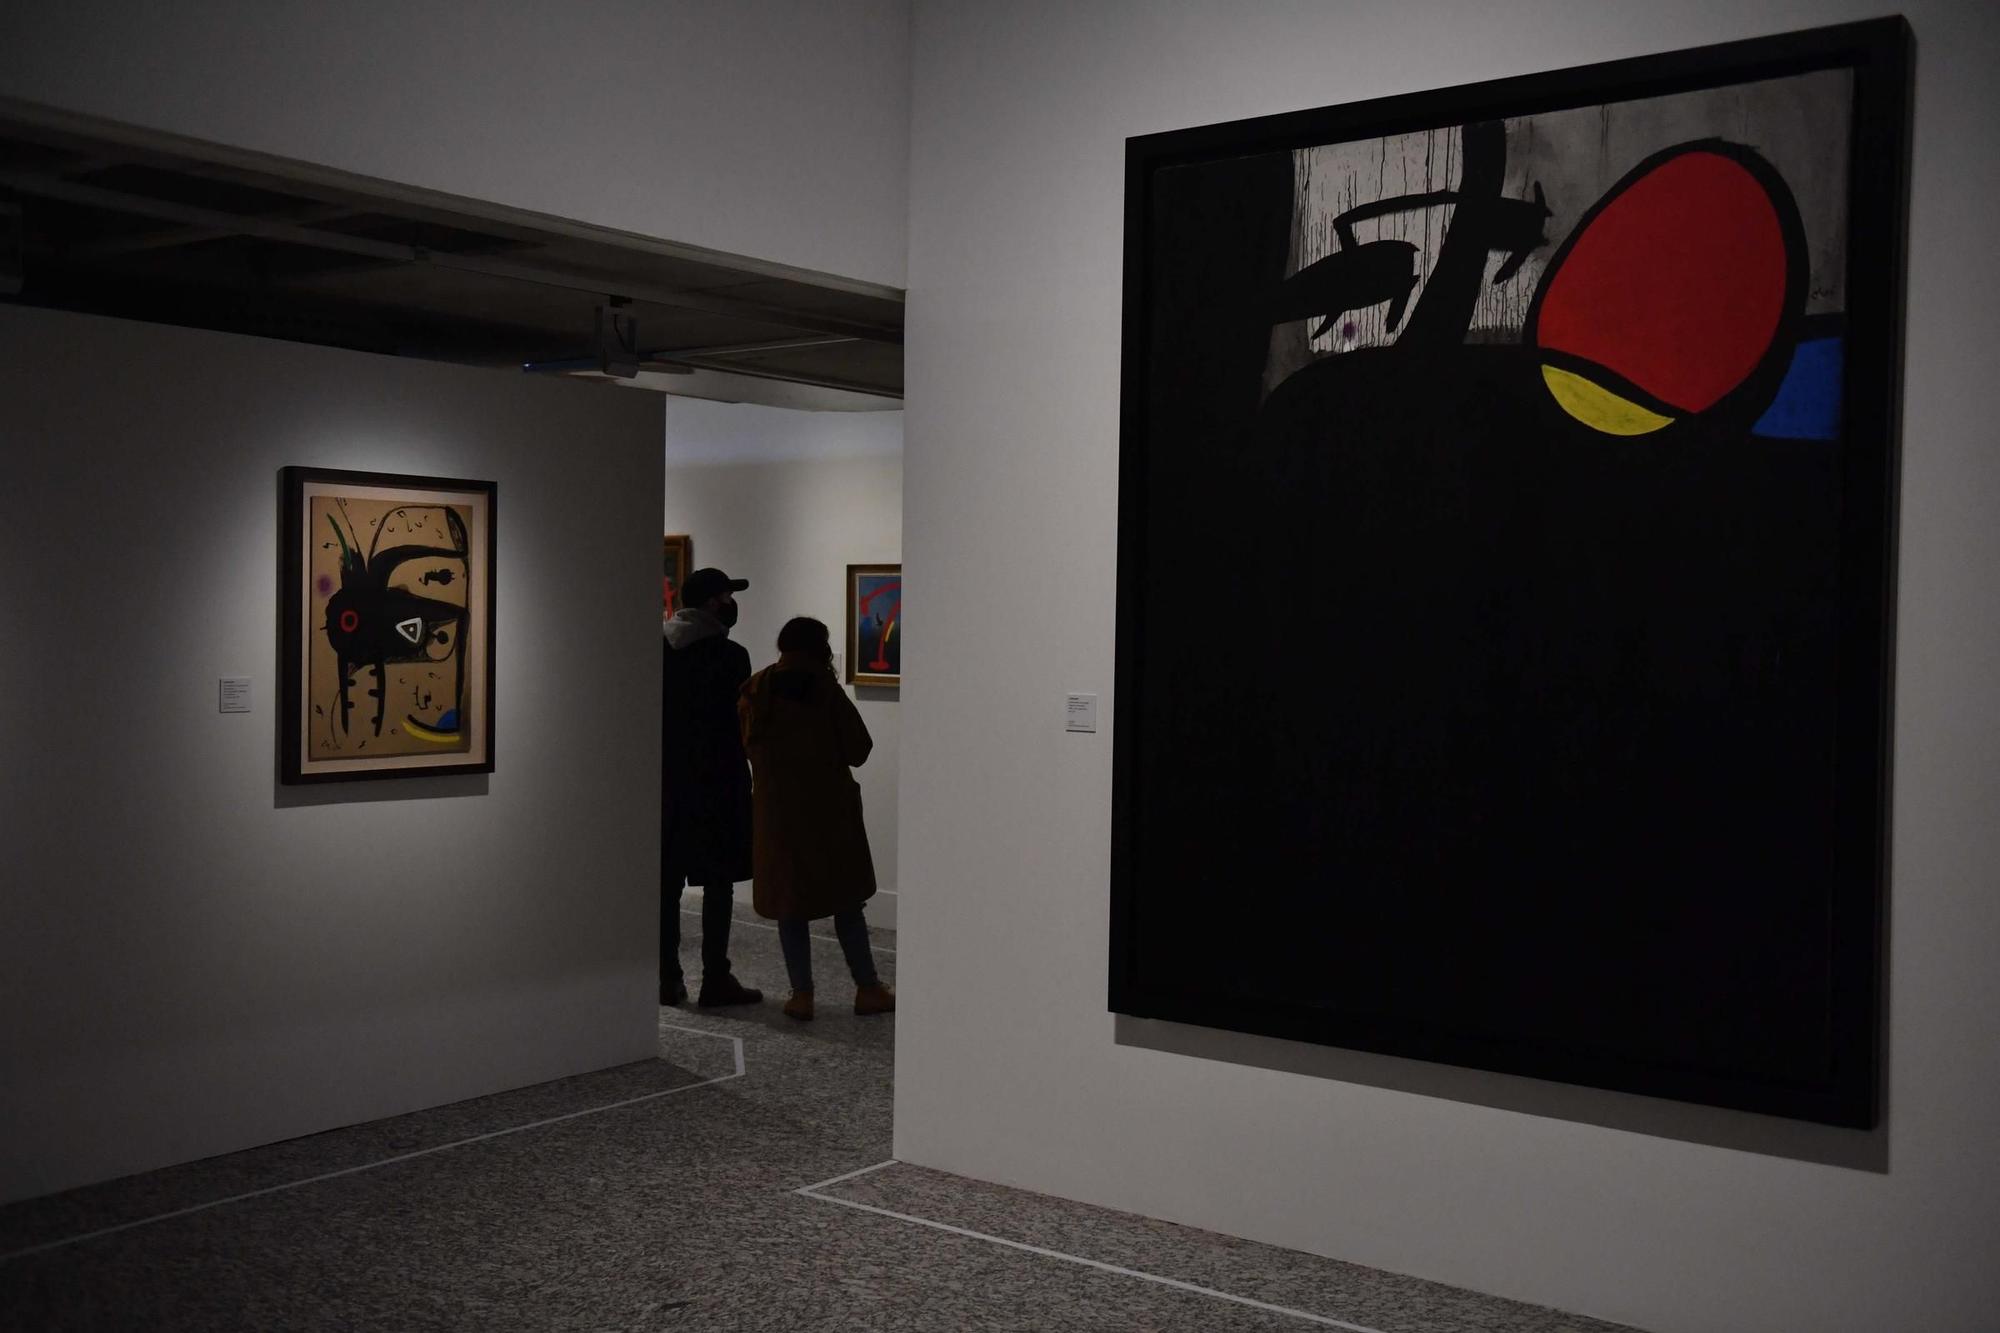 La Fundación Barrié inaugura su exposición de Miró